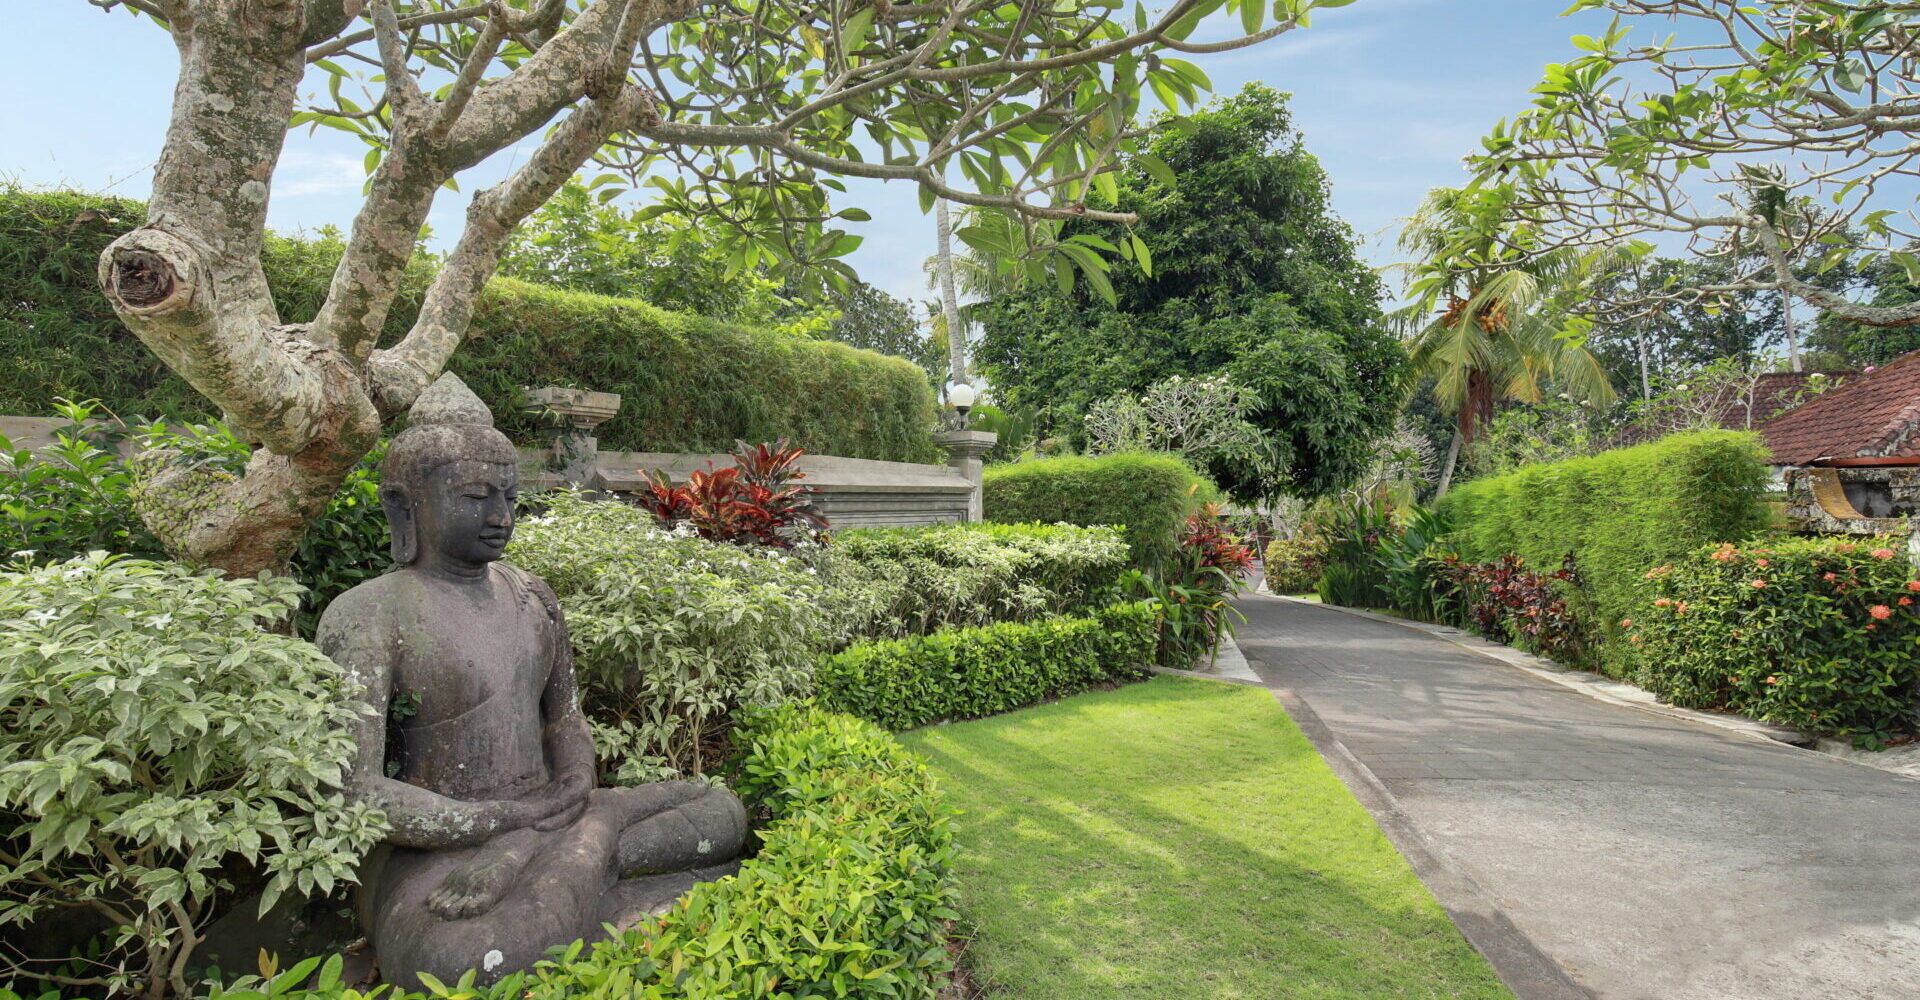 Statue of Buddha in the driveway gardens leading into the Sukavati estate.